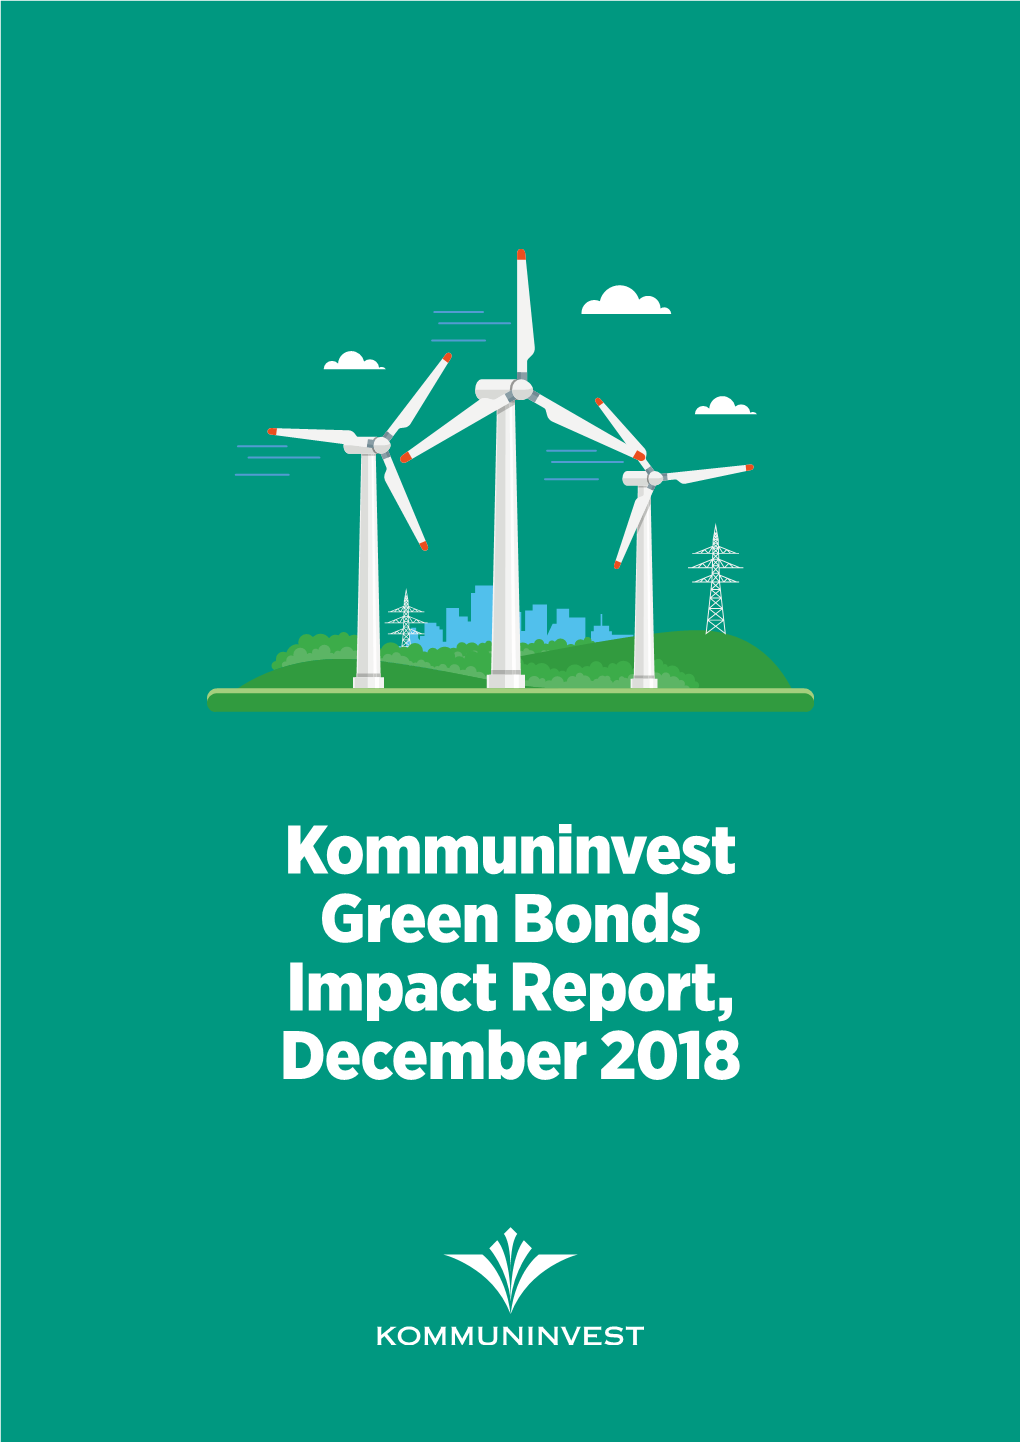 Kommun Invest Green Bonds Impact Report, December 2018